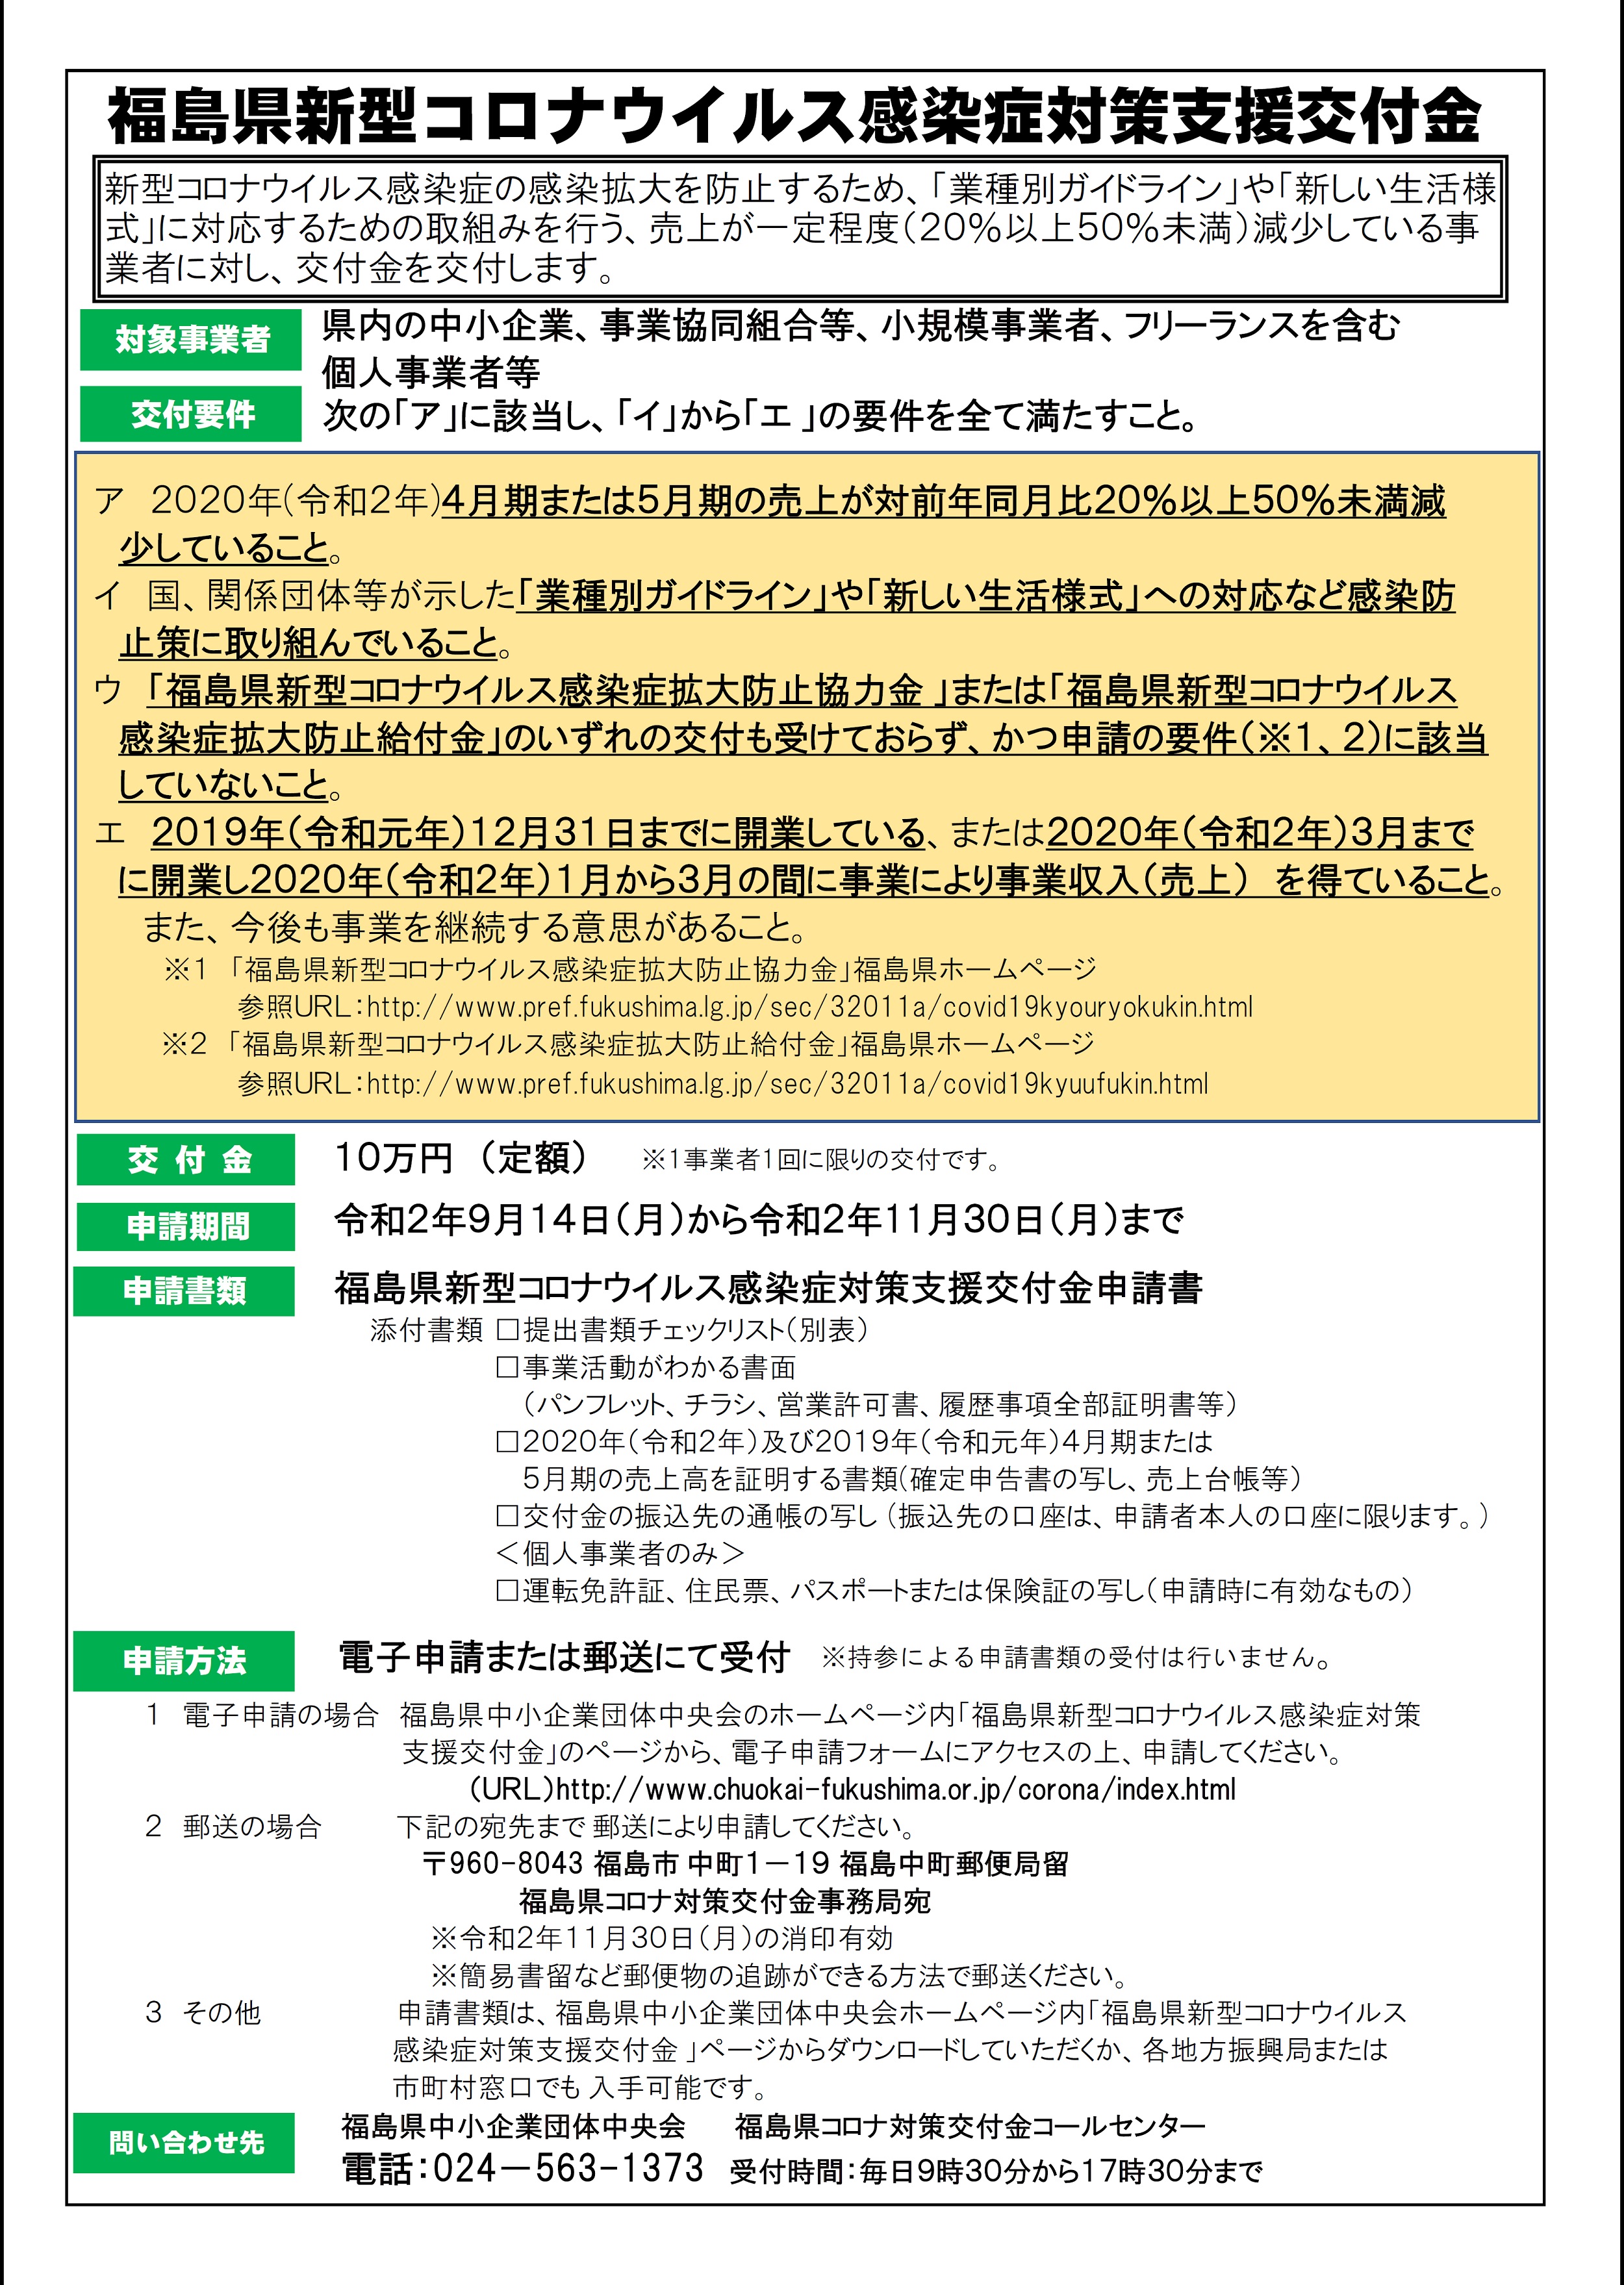 【新型コロナ】福島県新型コロナウイルス感染症対策支援交付金について